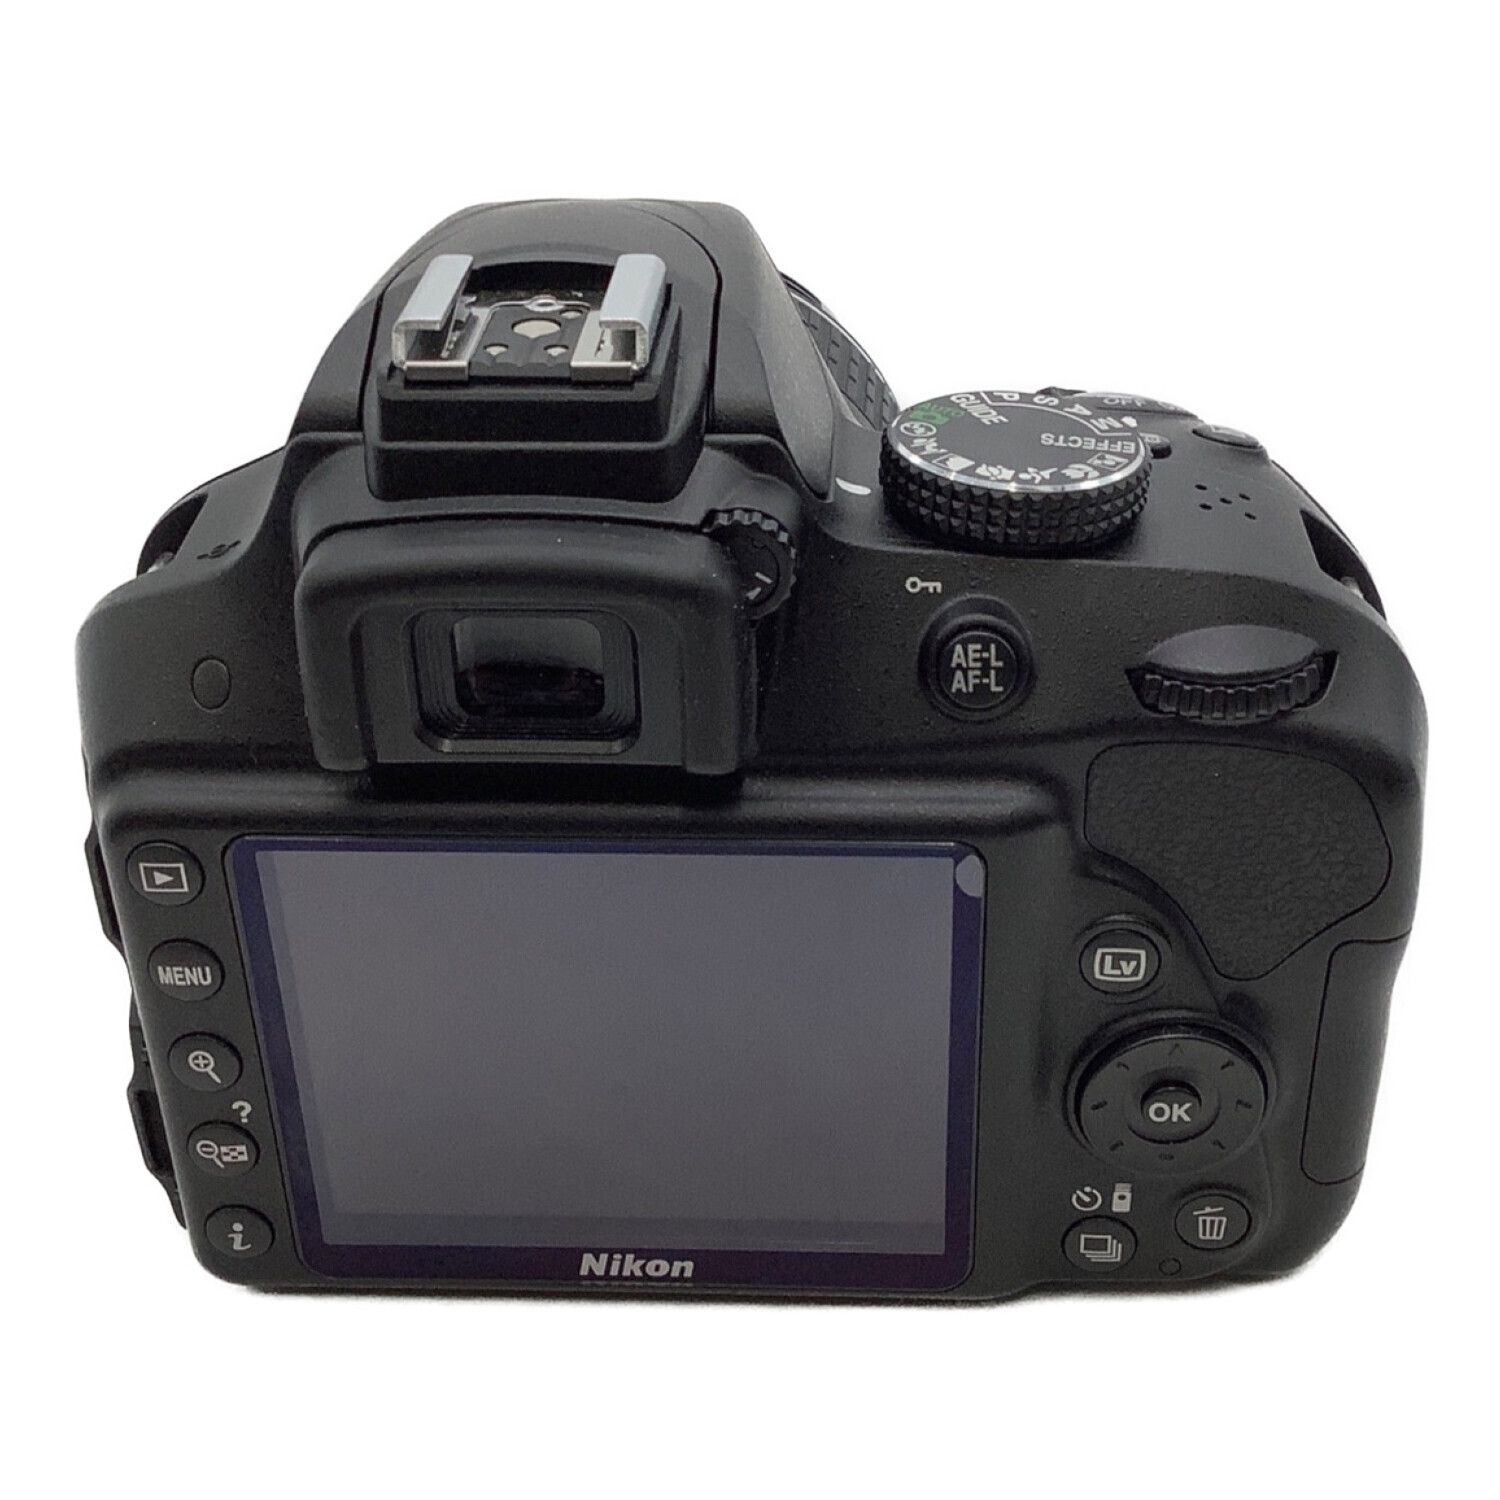 Nikon (ニコン) デジタル一眼レフカメラ D3300ダブルズームキット 2416